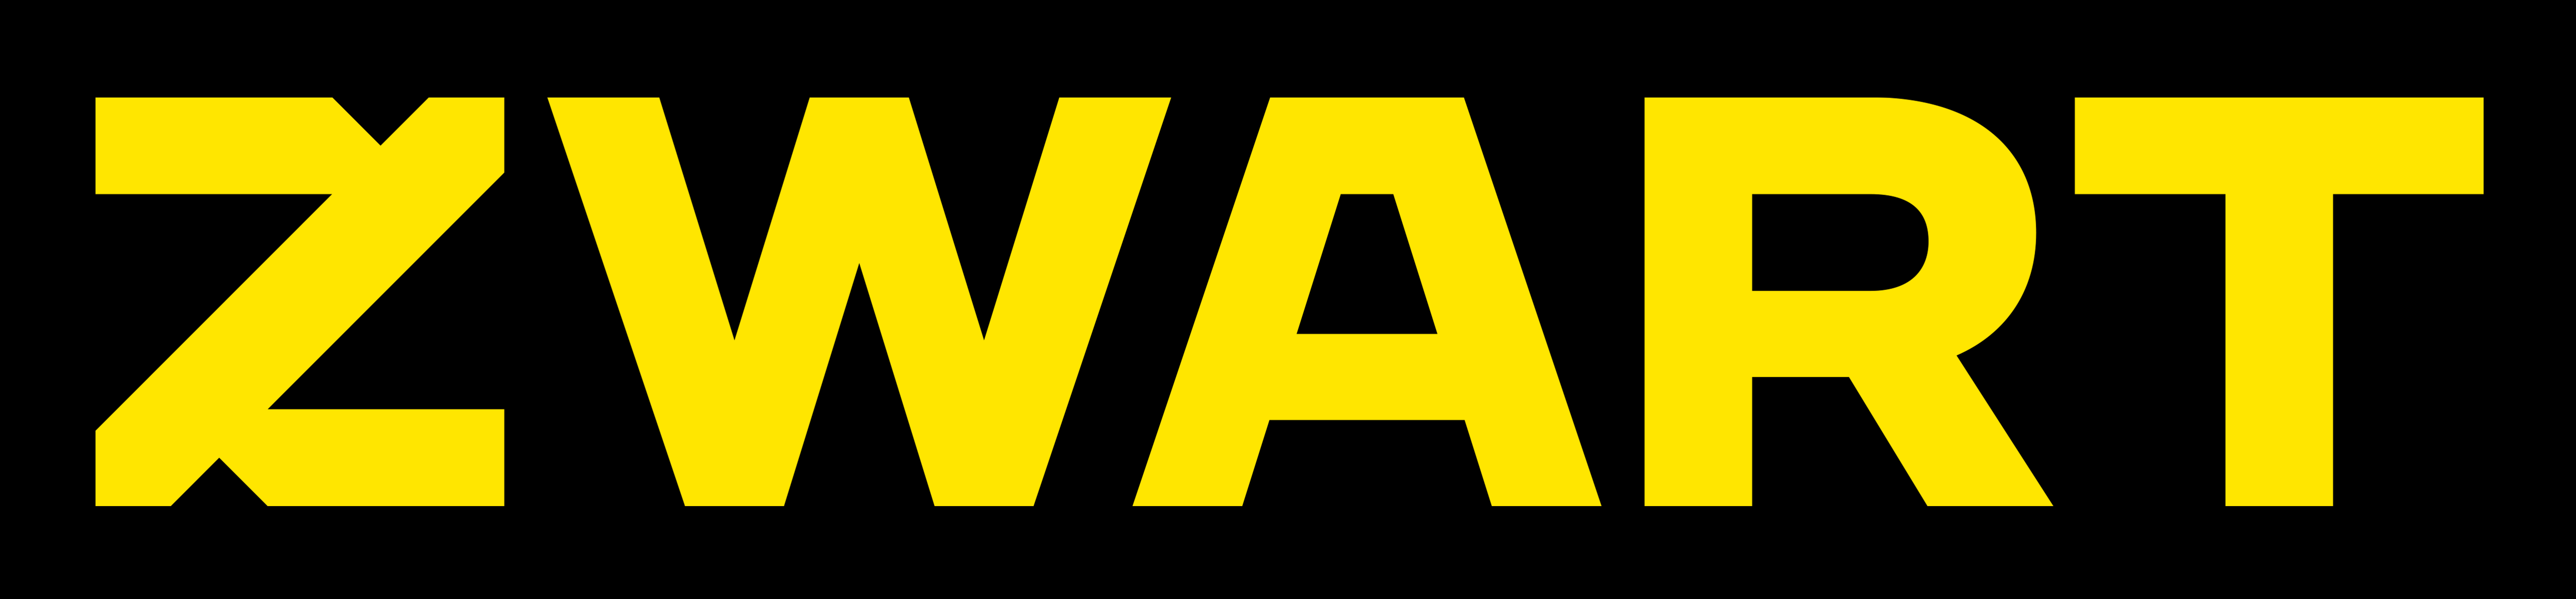 vacature logo organisatie